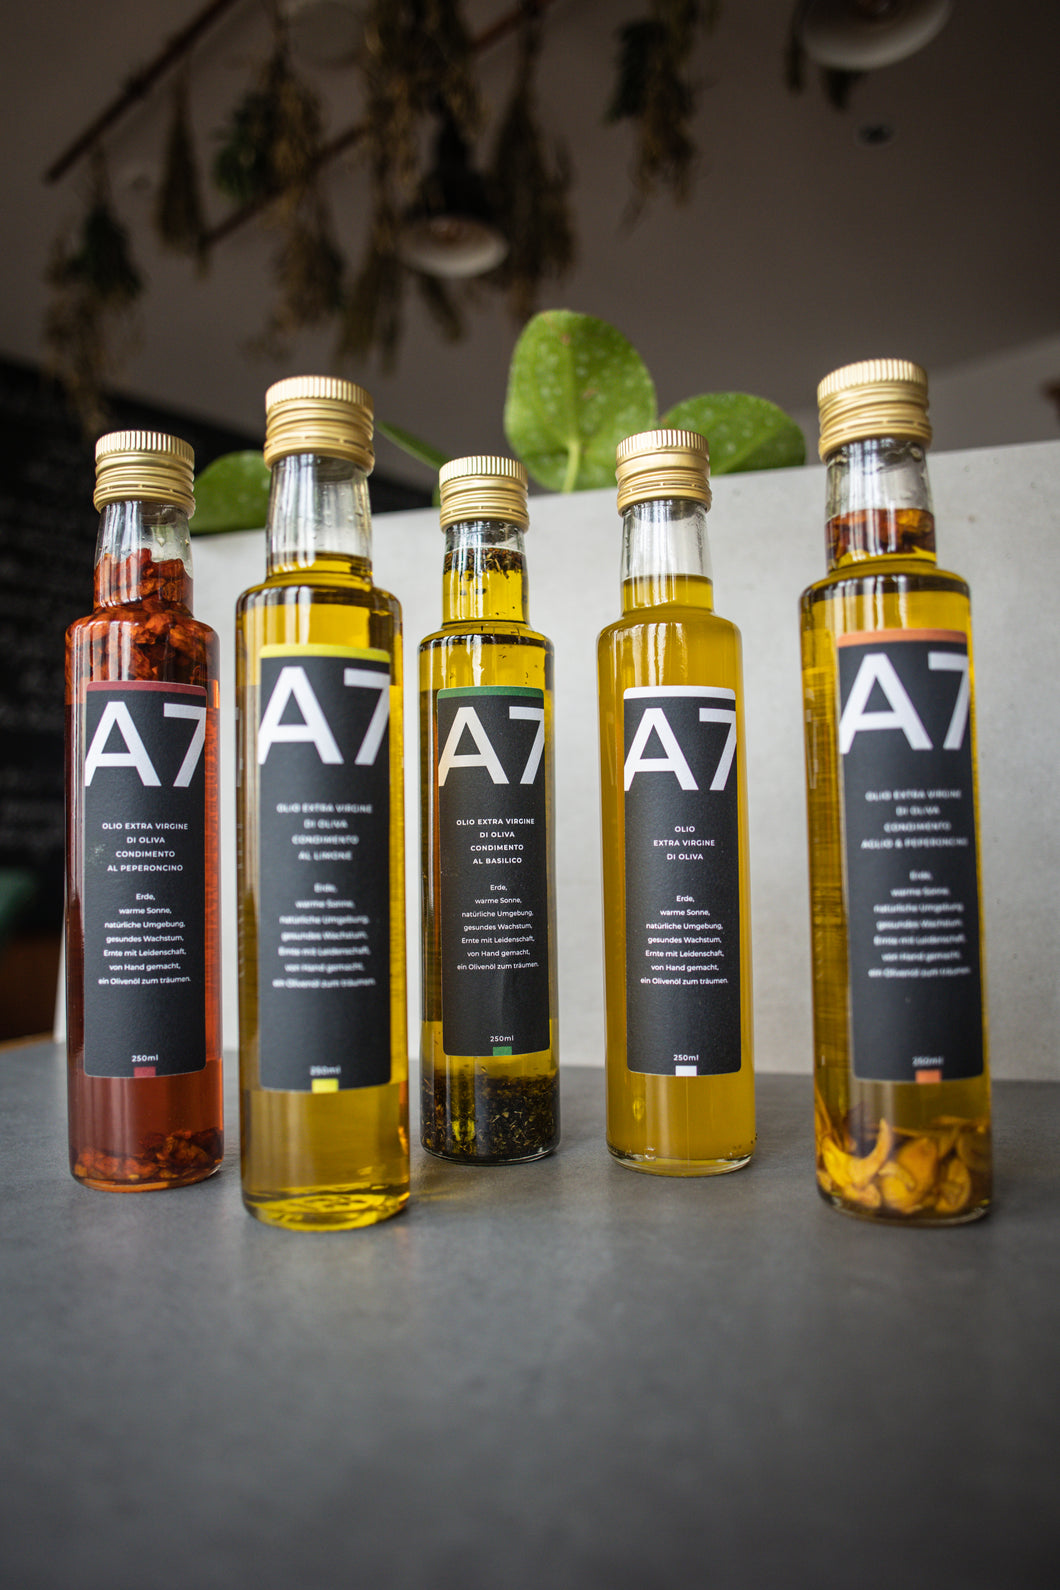 A7 - Kaltgepresstes natives Olivenöl mit Knoblauch und Chili